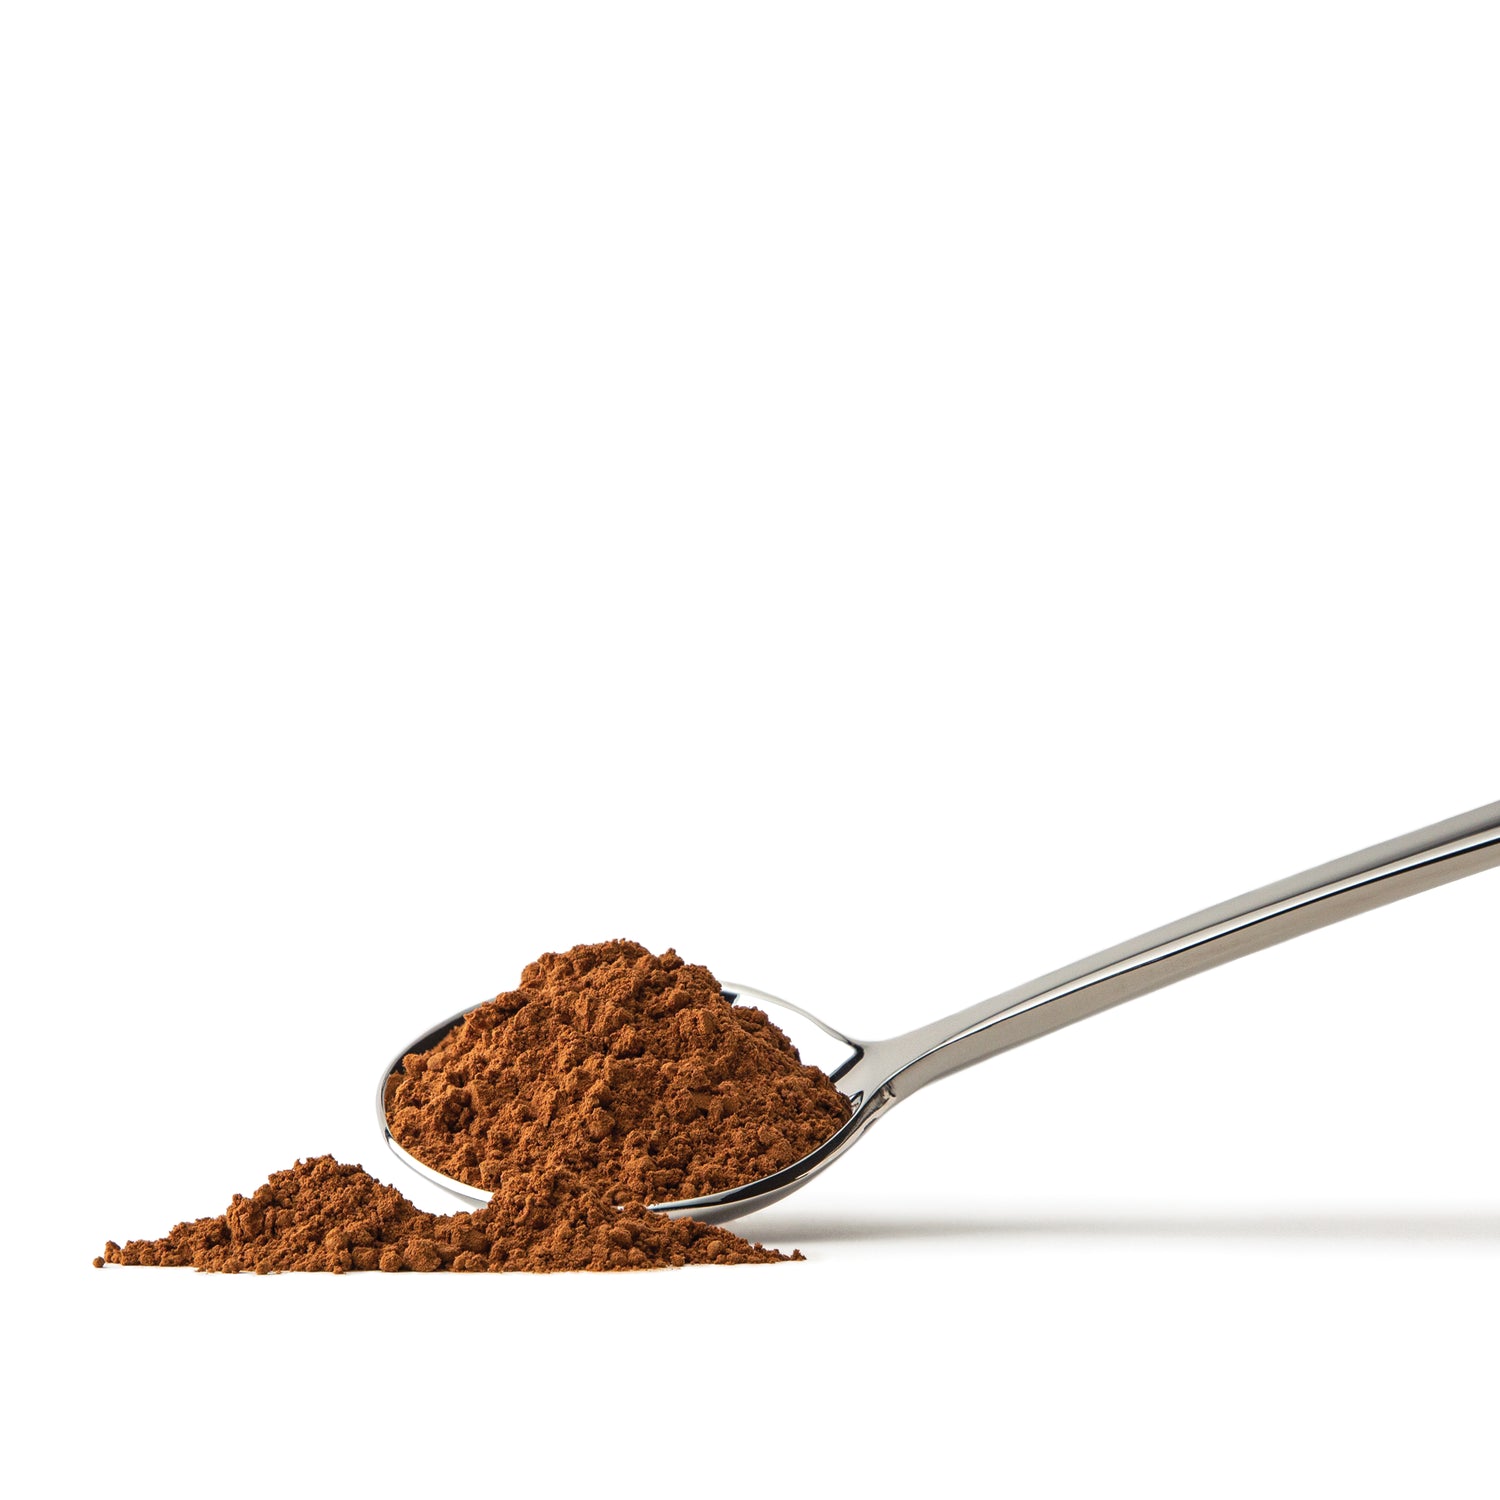 Foods Alive - Organic Cacao Powder - 8 oz